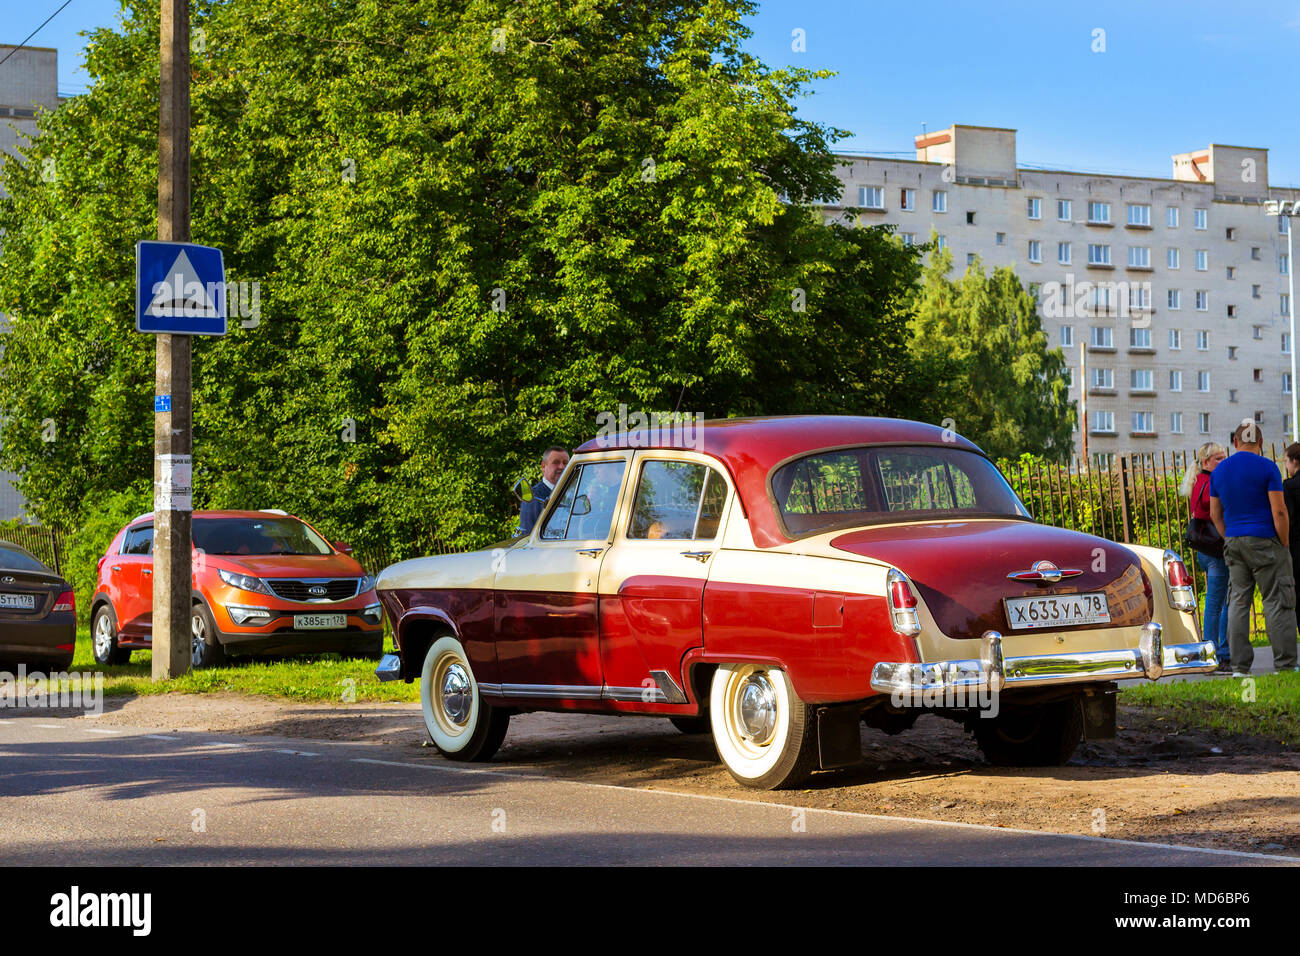 Saint-pétersbourg, Russie - septembre 1, 2017 : voiture rouge rétro soviétique Volga GAZ-21 retro rally classic Gorki. Voiture rétro russe se tient sur le côté de la ro Banque D'Images